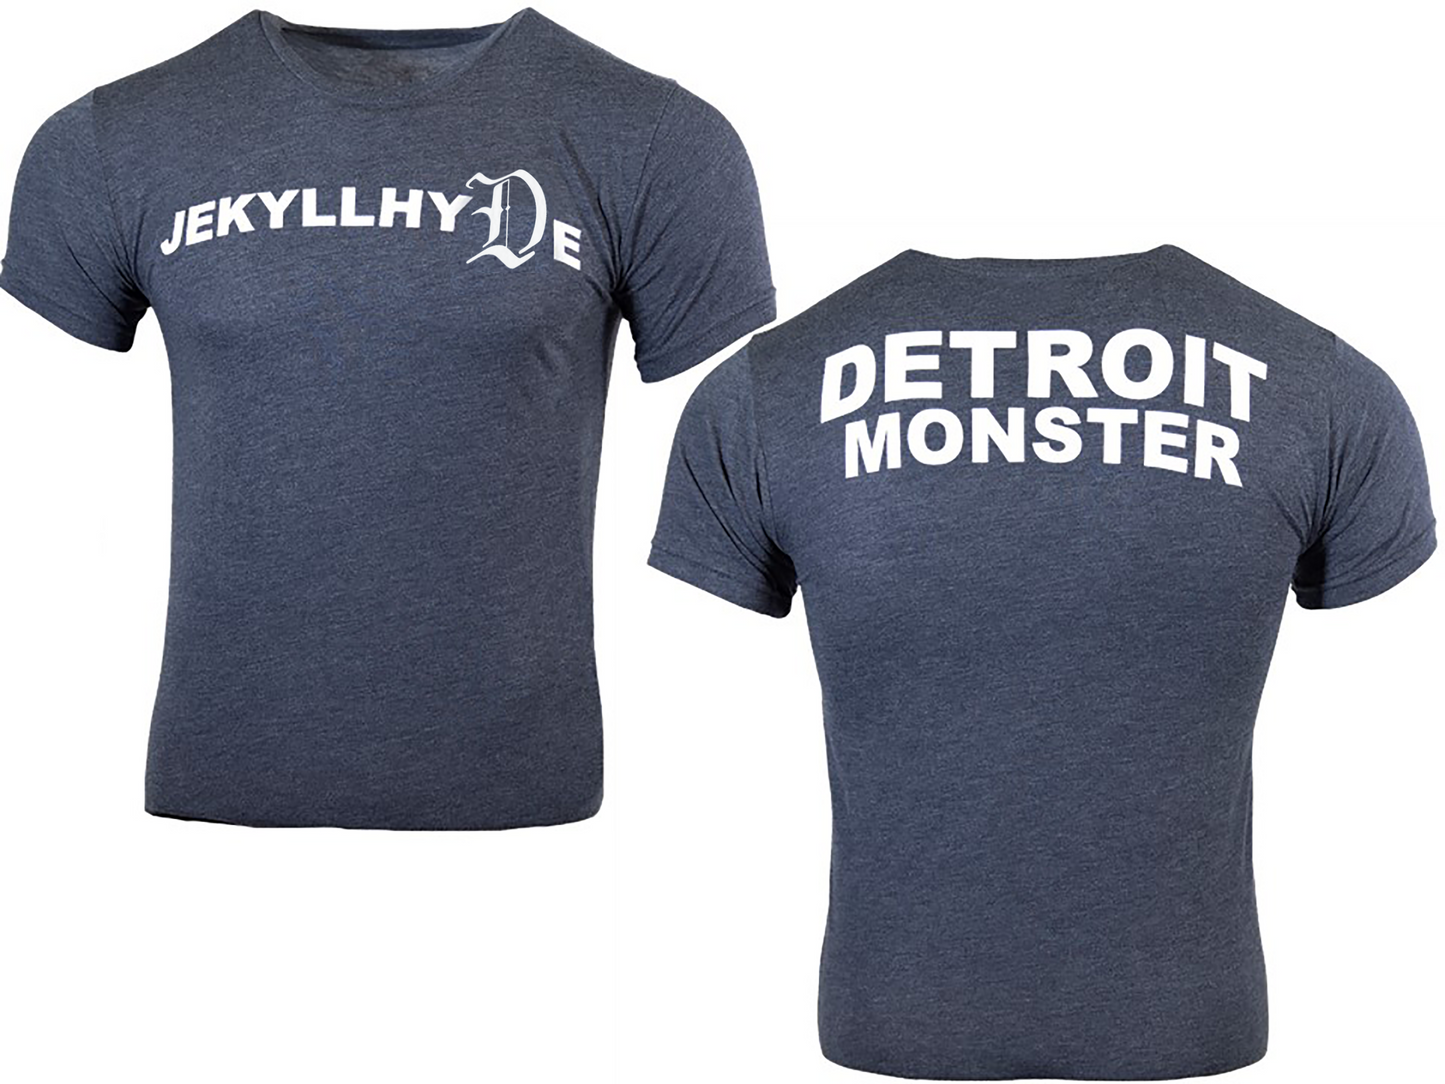 Detroit Monster t-shirt